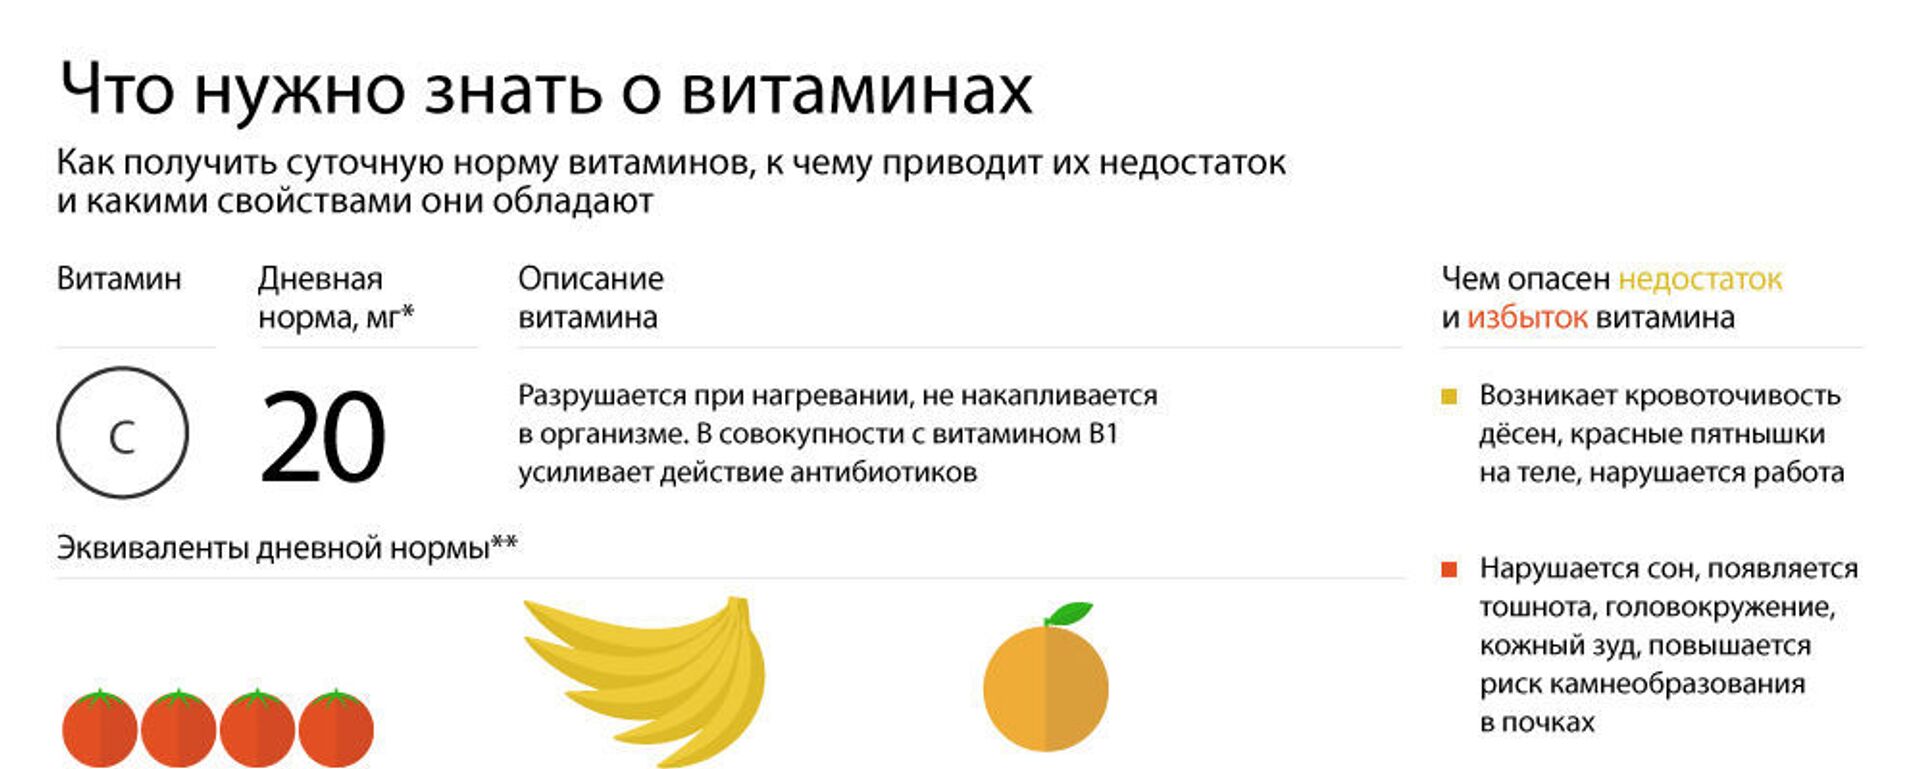 Что нужно знать о витаминах - Sputnik Абхазия, 1920, 02.03.2019